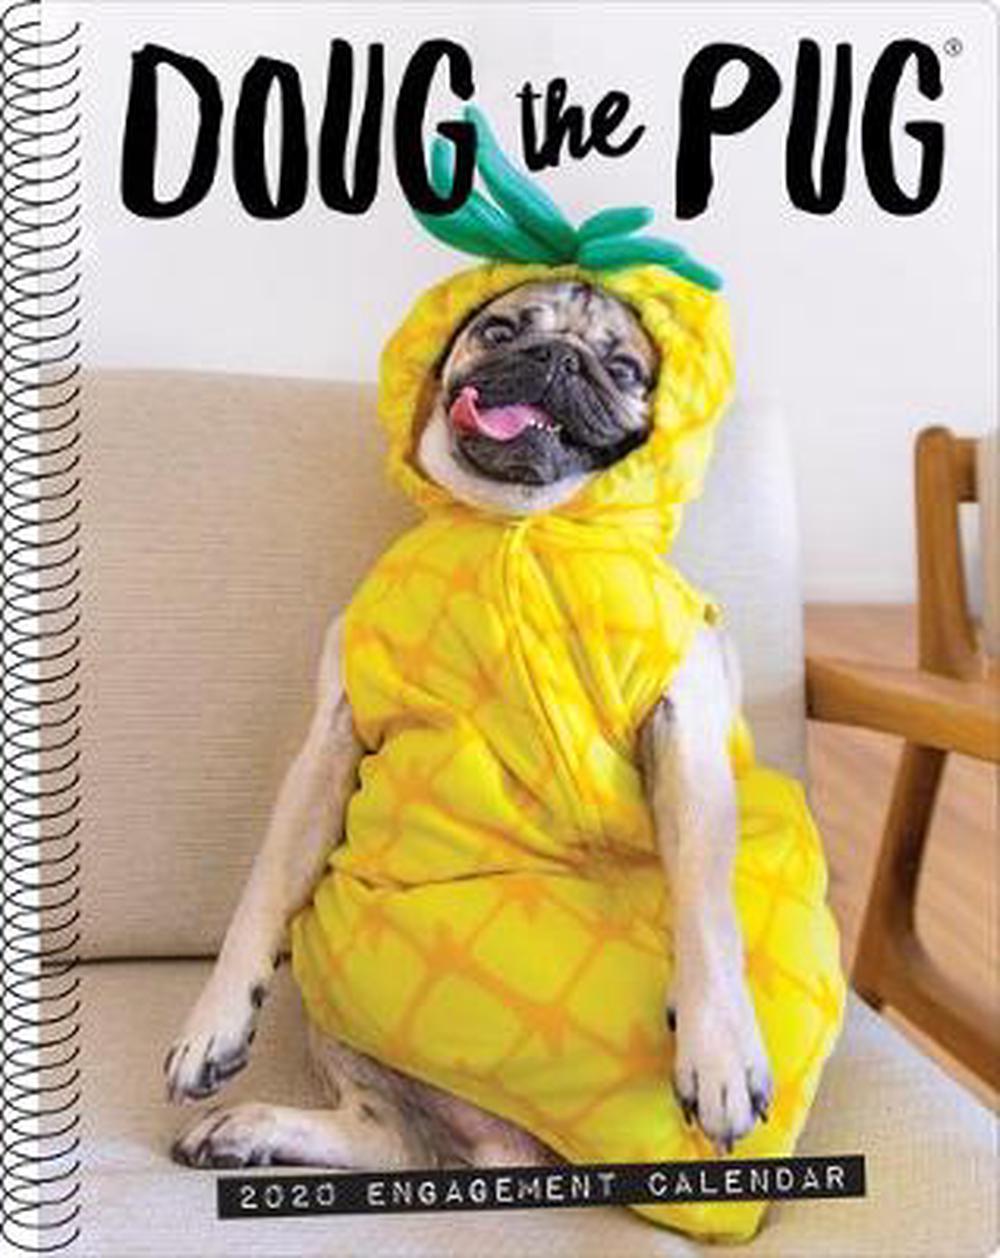 Doug the Pug 2020 Engagement Calendar (dog Breed Calendar) Free